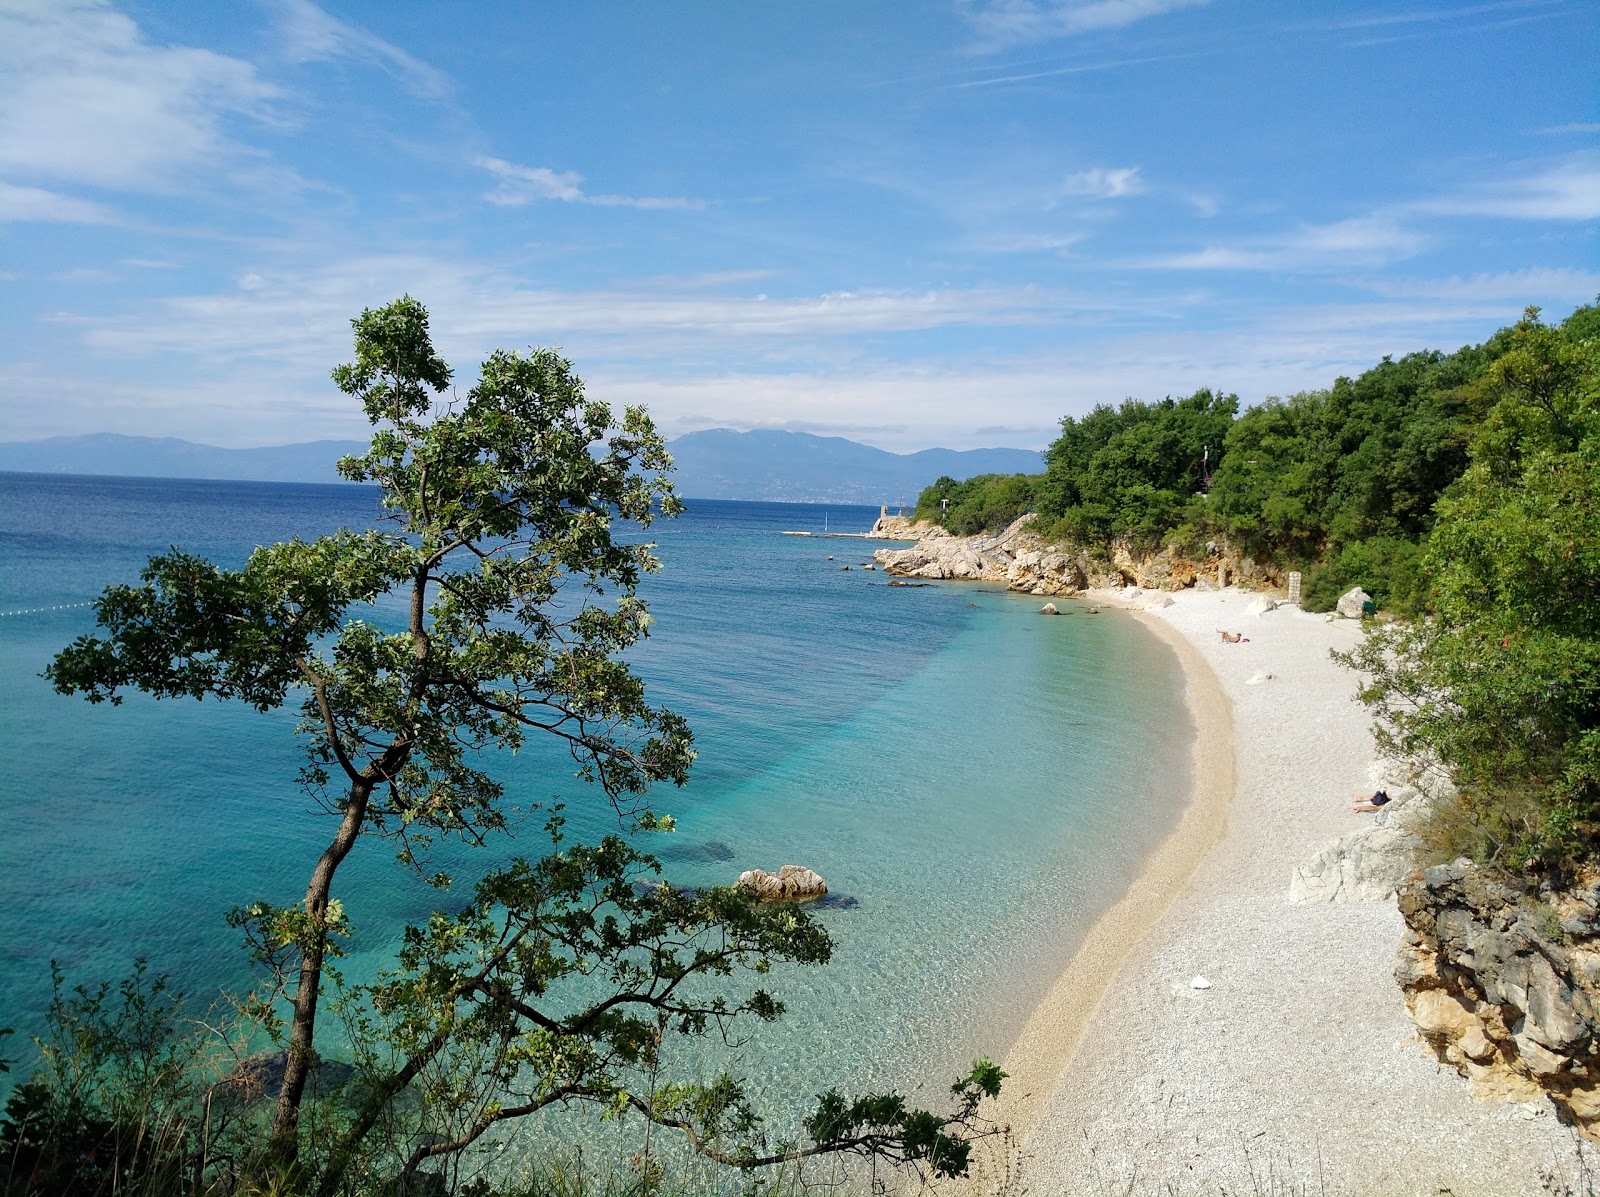 Kostrena beach'in fotoğrafı hafif ince çakıl taş yüzey ile